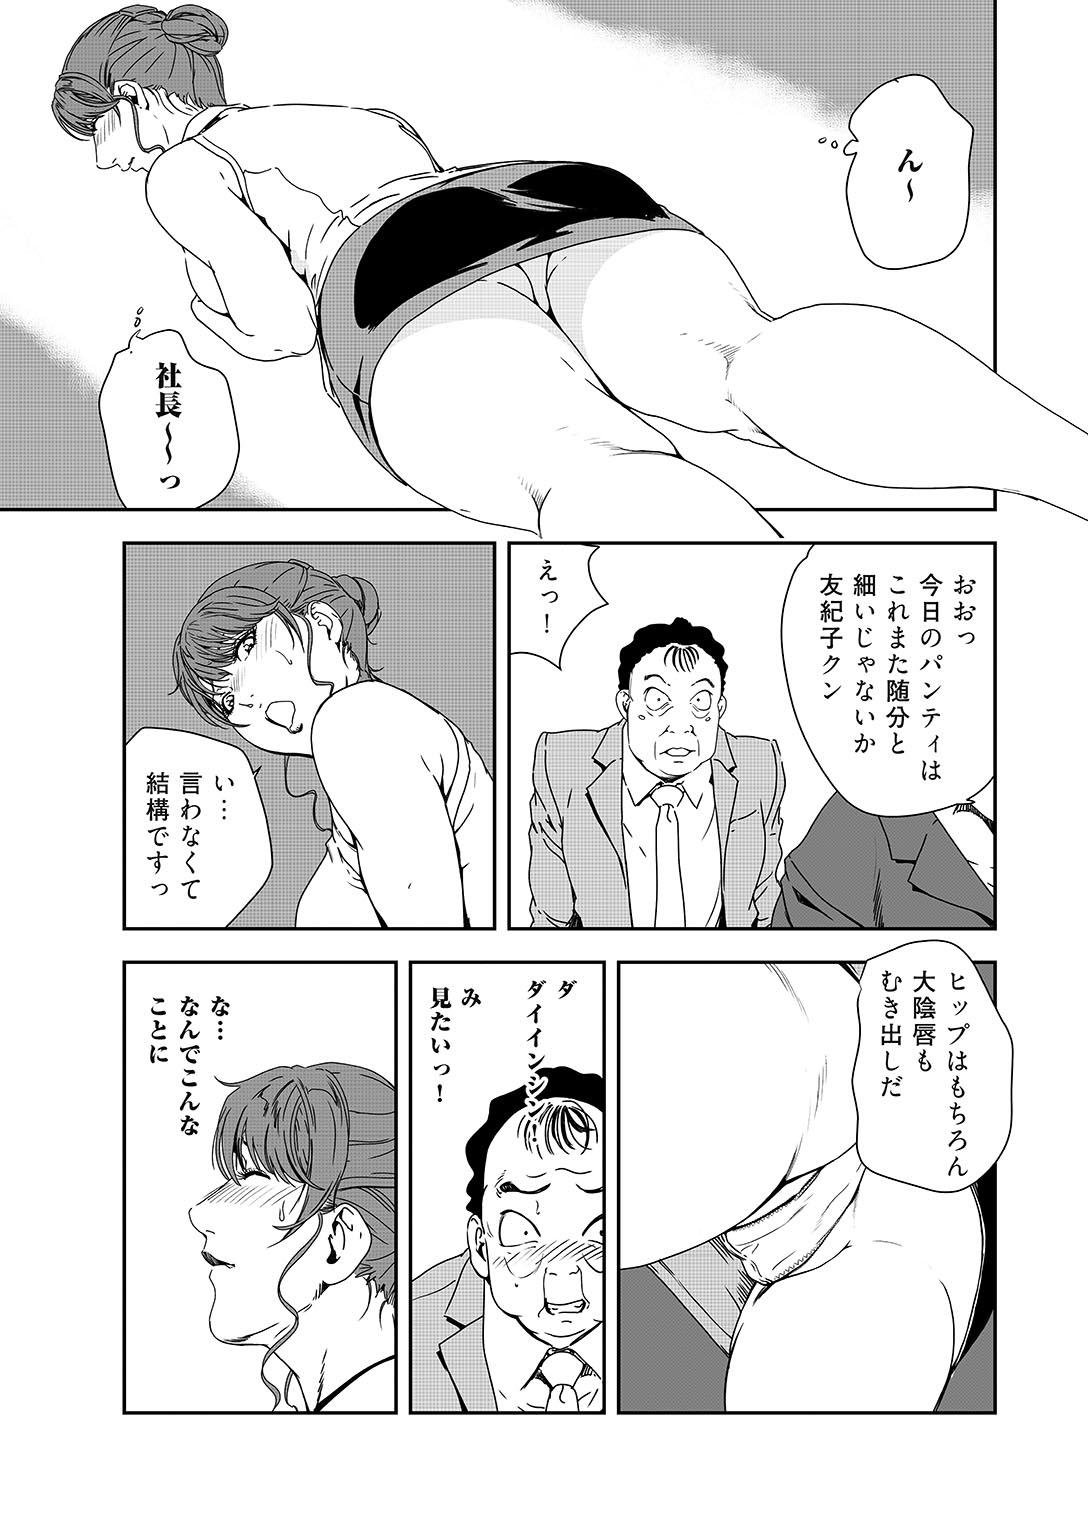 Highschool Nikuhisyo Yukiko 38 Funny - Page 10